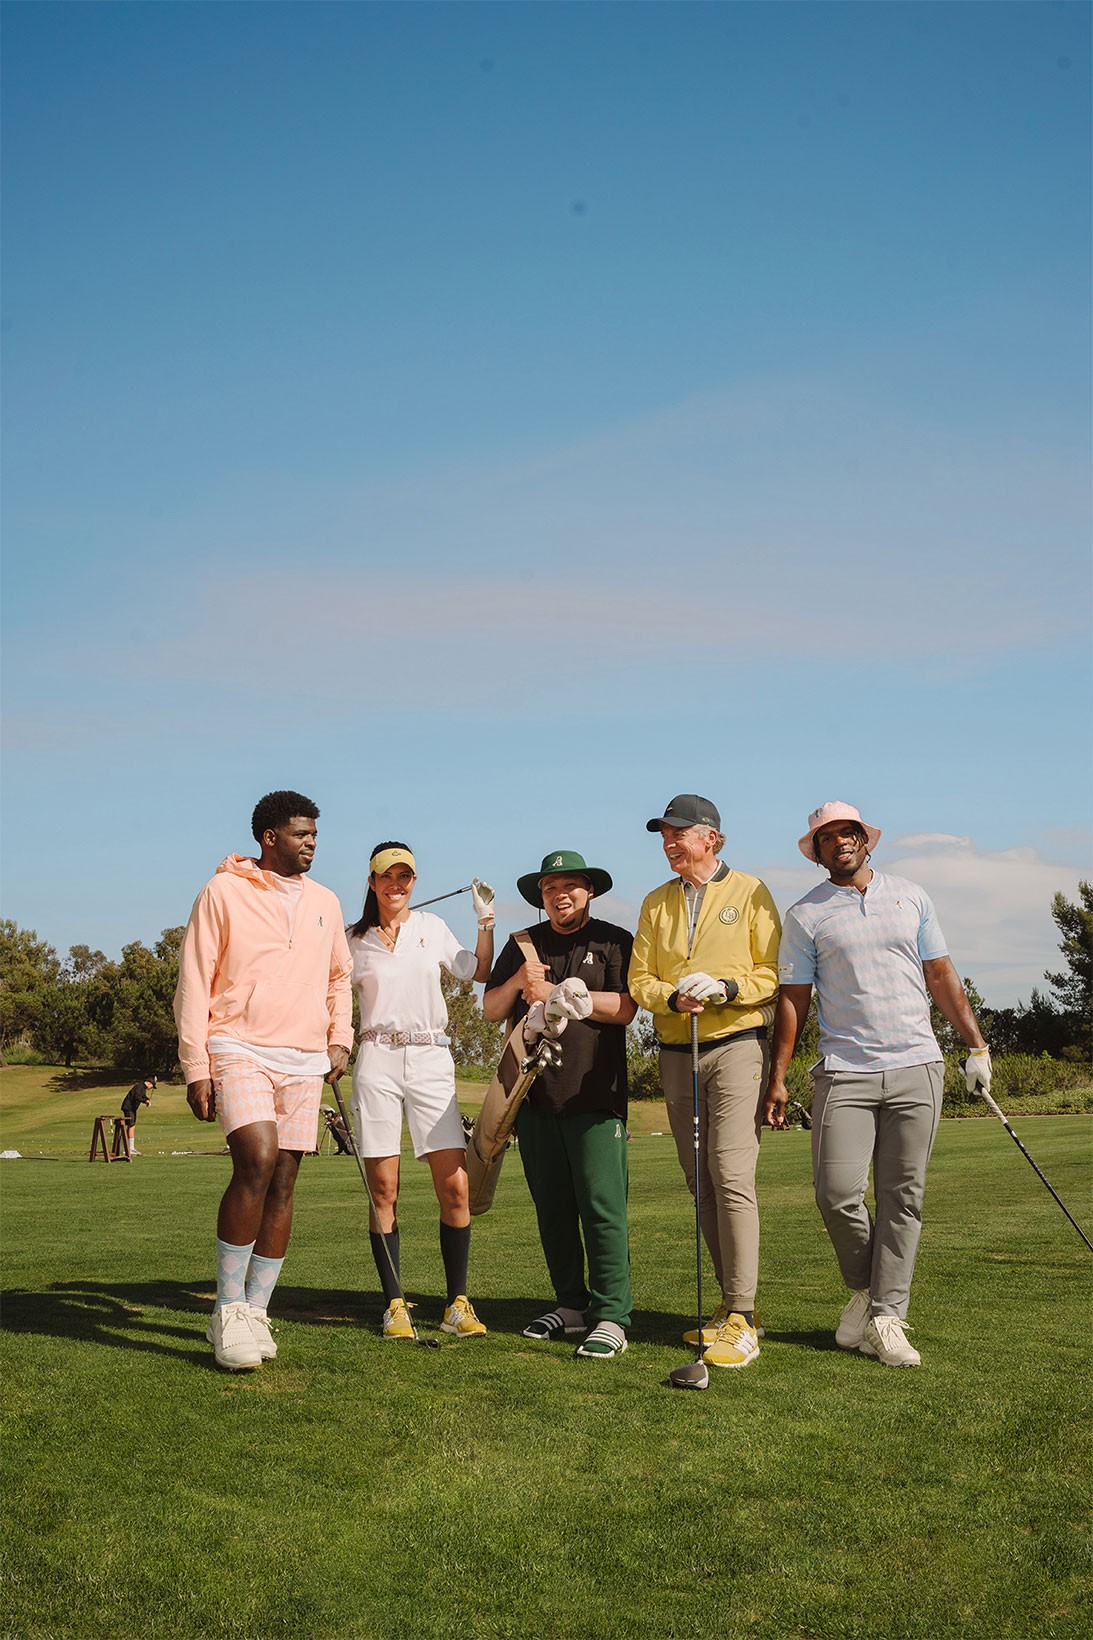 adidas выпустил гольф-коллекцию в стиле комедии «Счастливчик Гилмор» (фото 15)